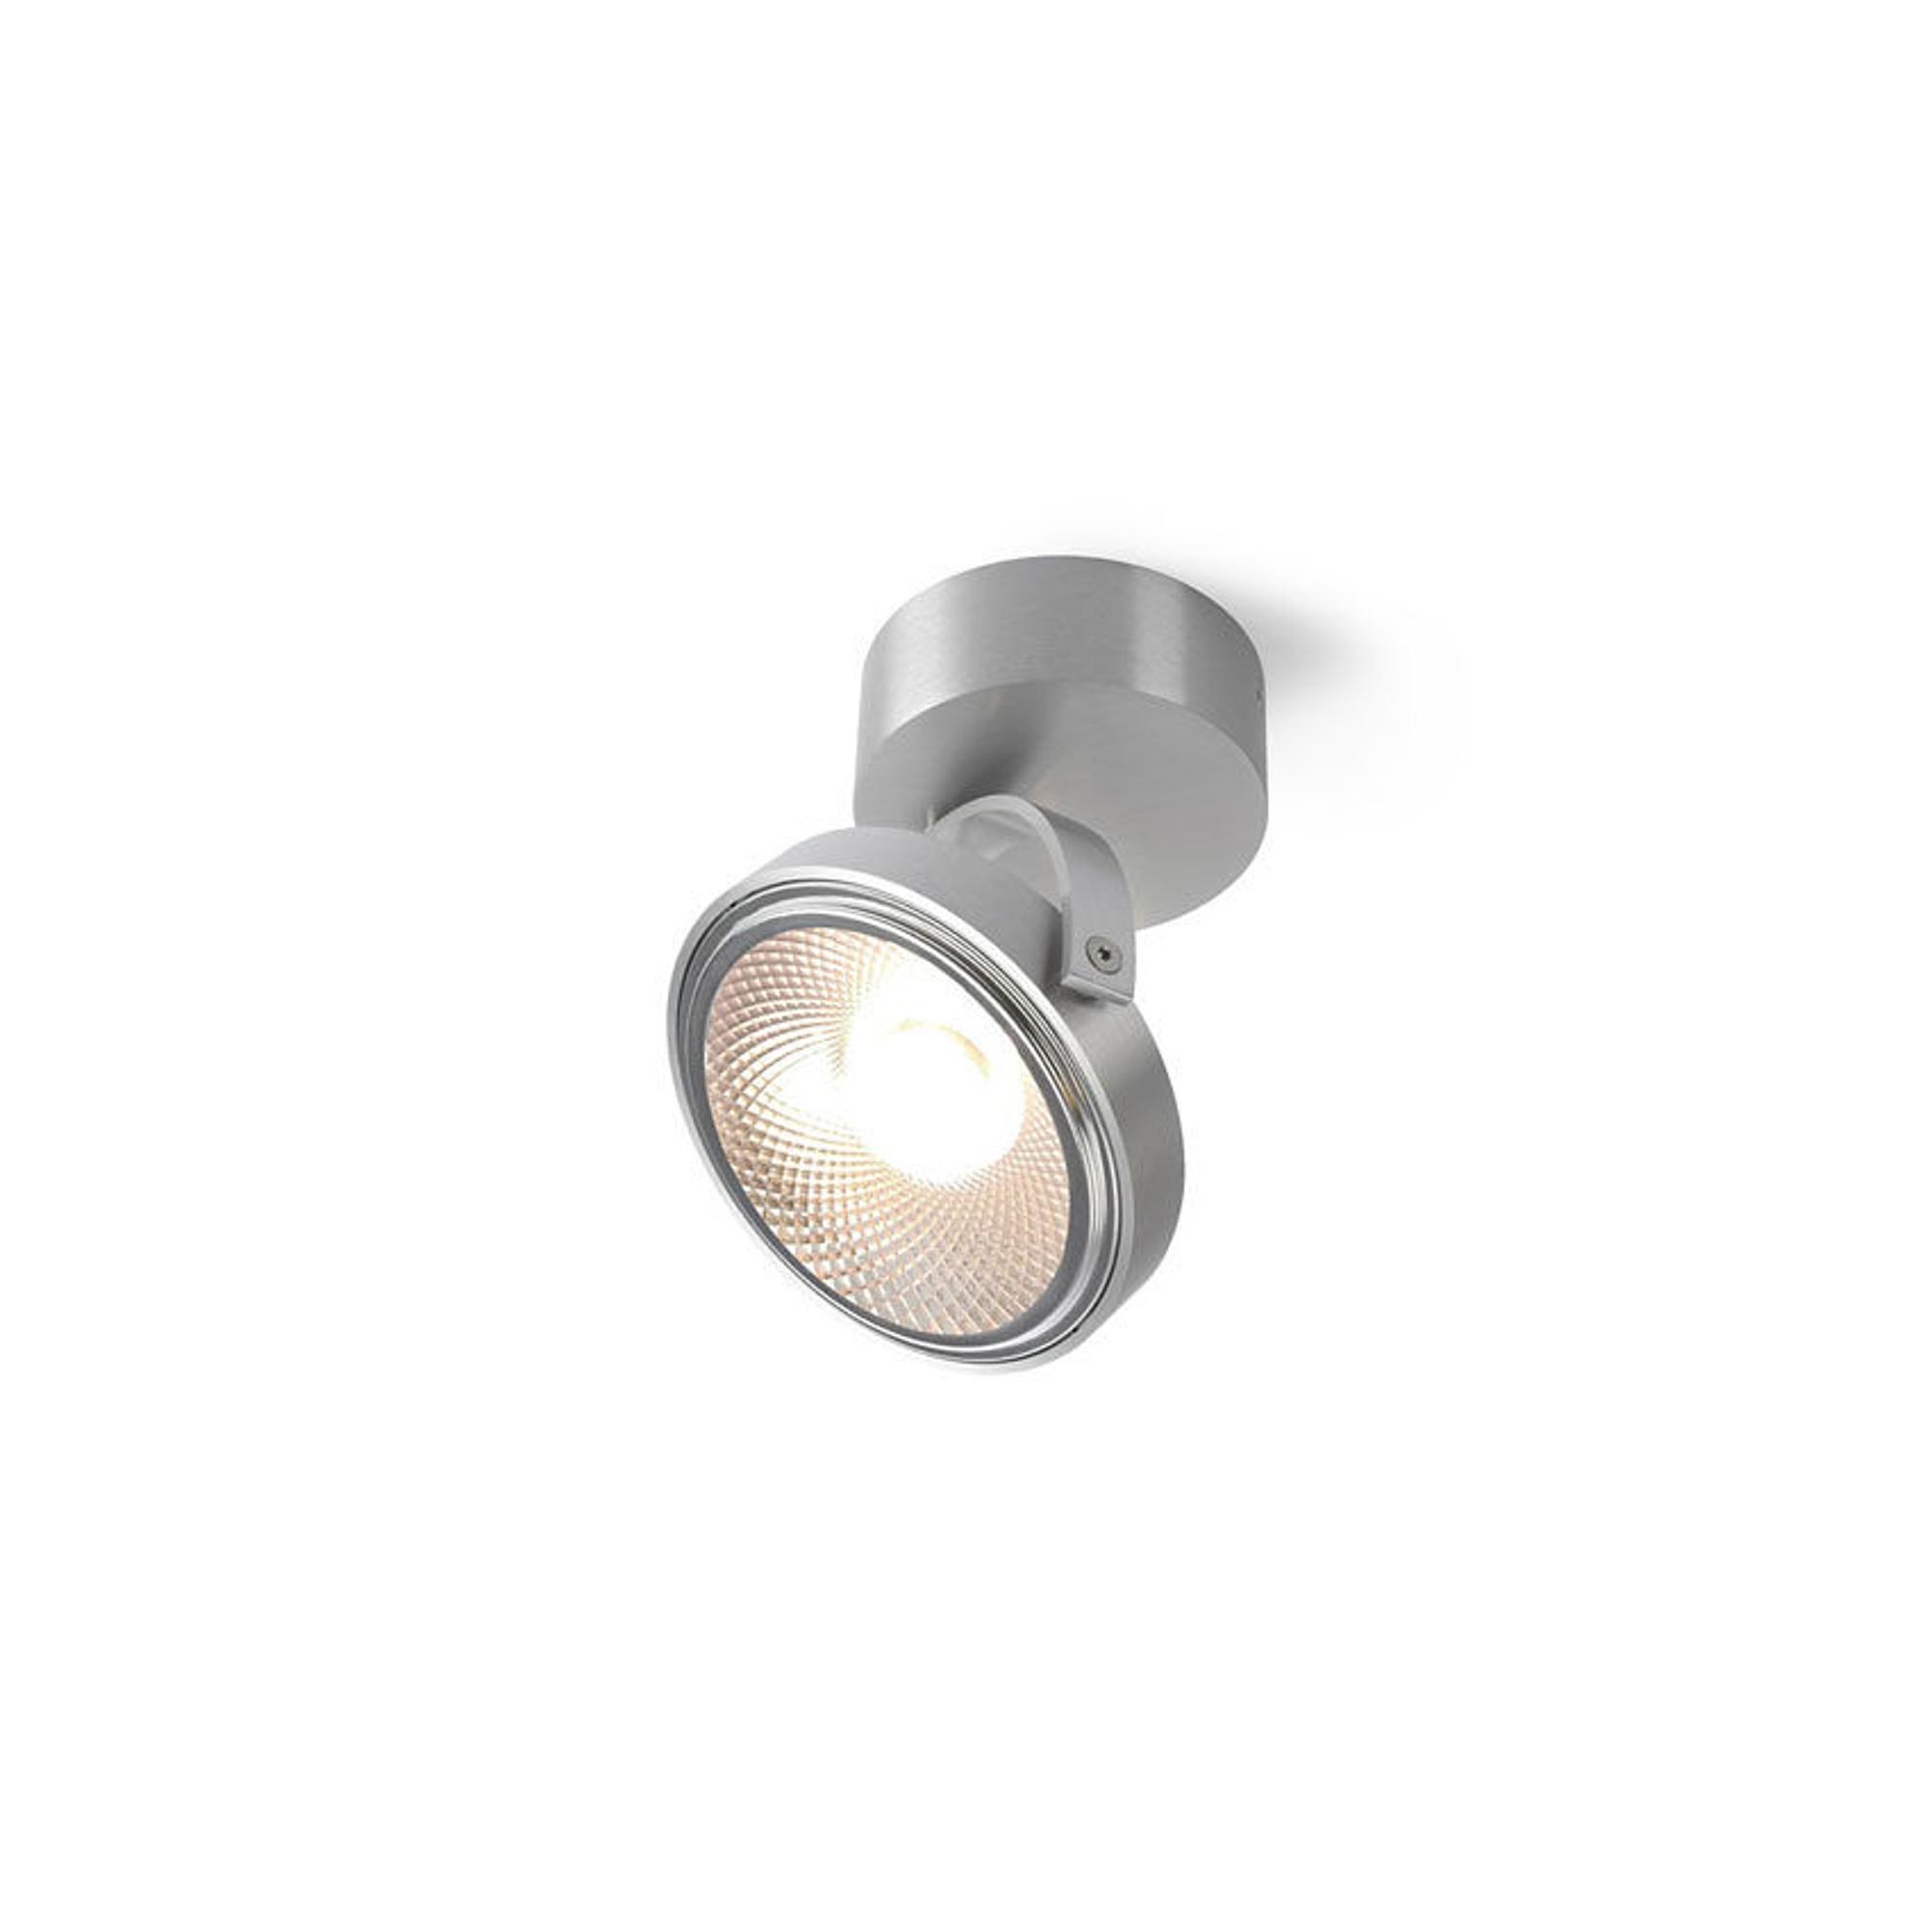 Trizo 21 PIN-UP 1 Spot i Lampa Sufitowa Aluminiowa